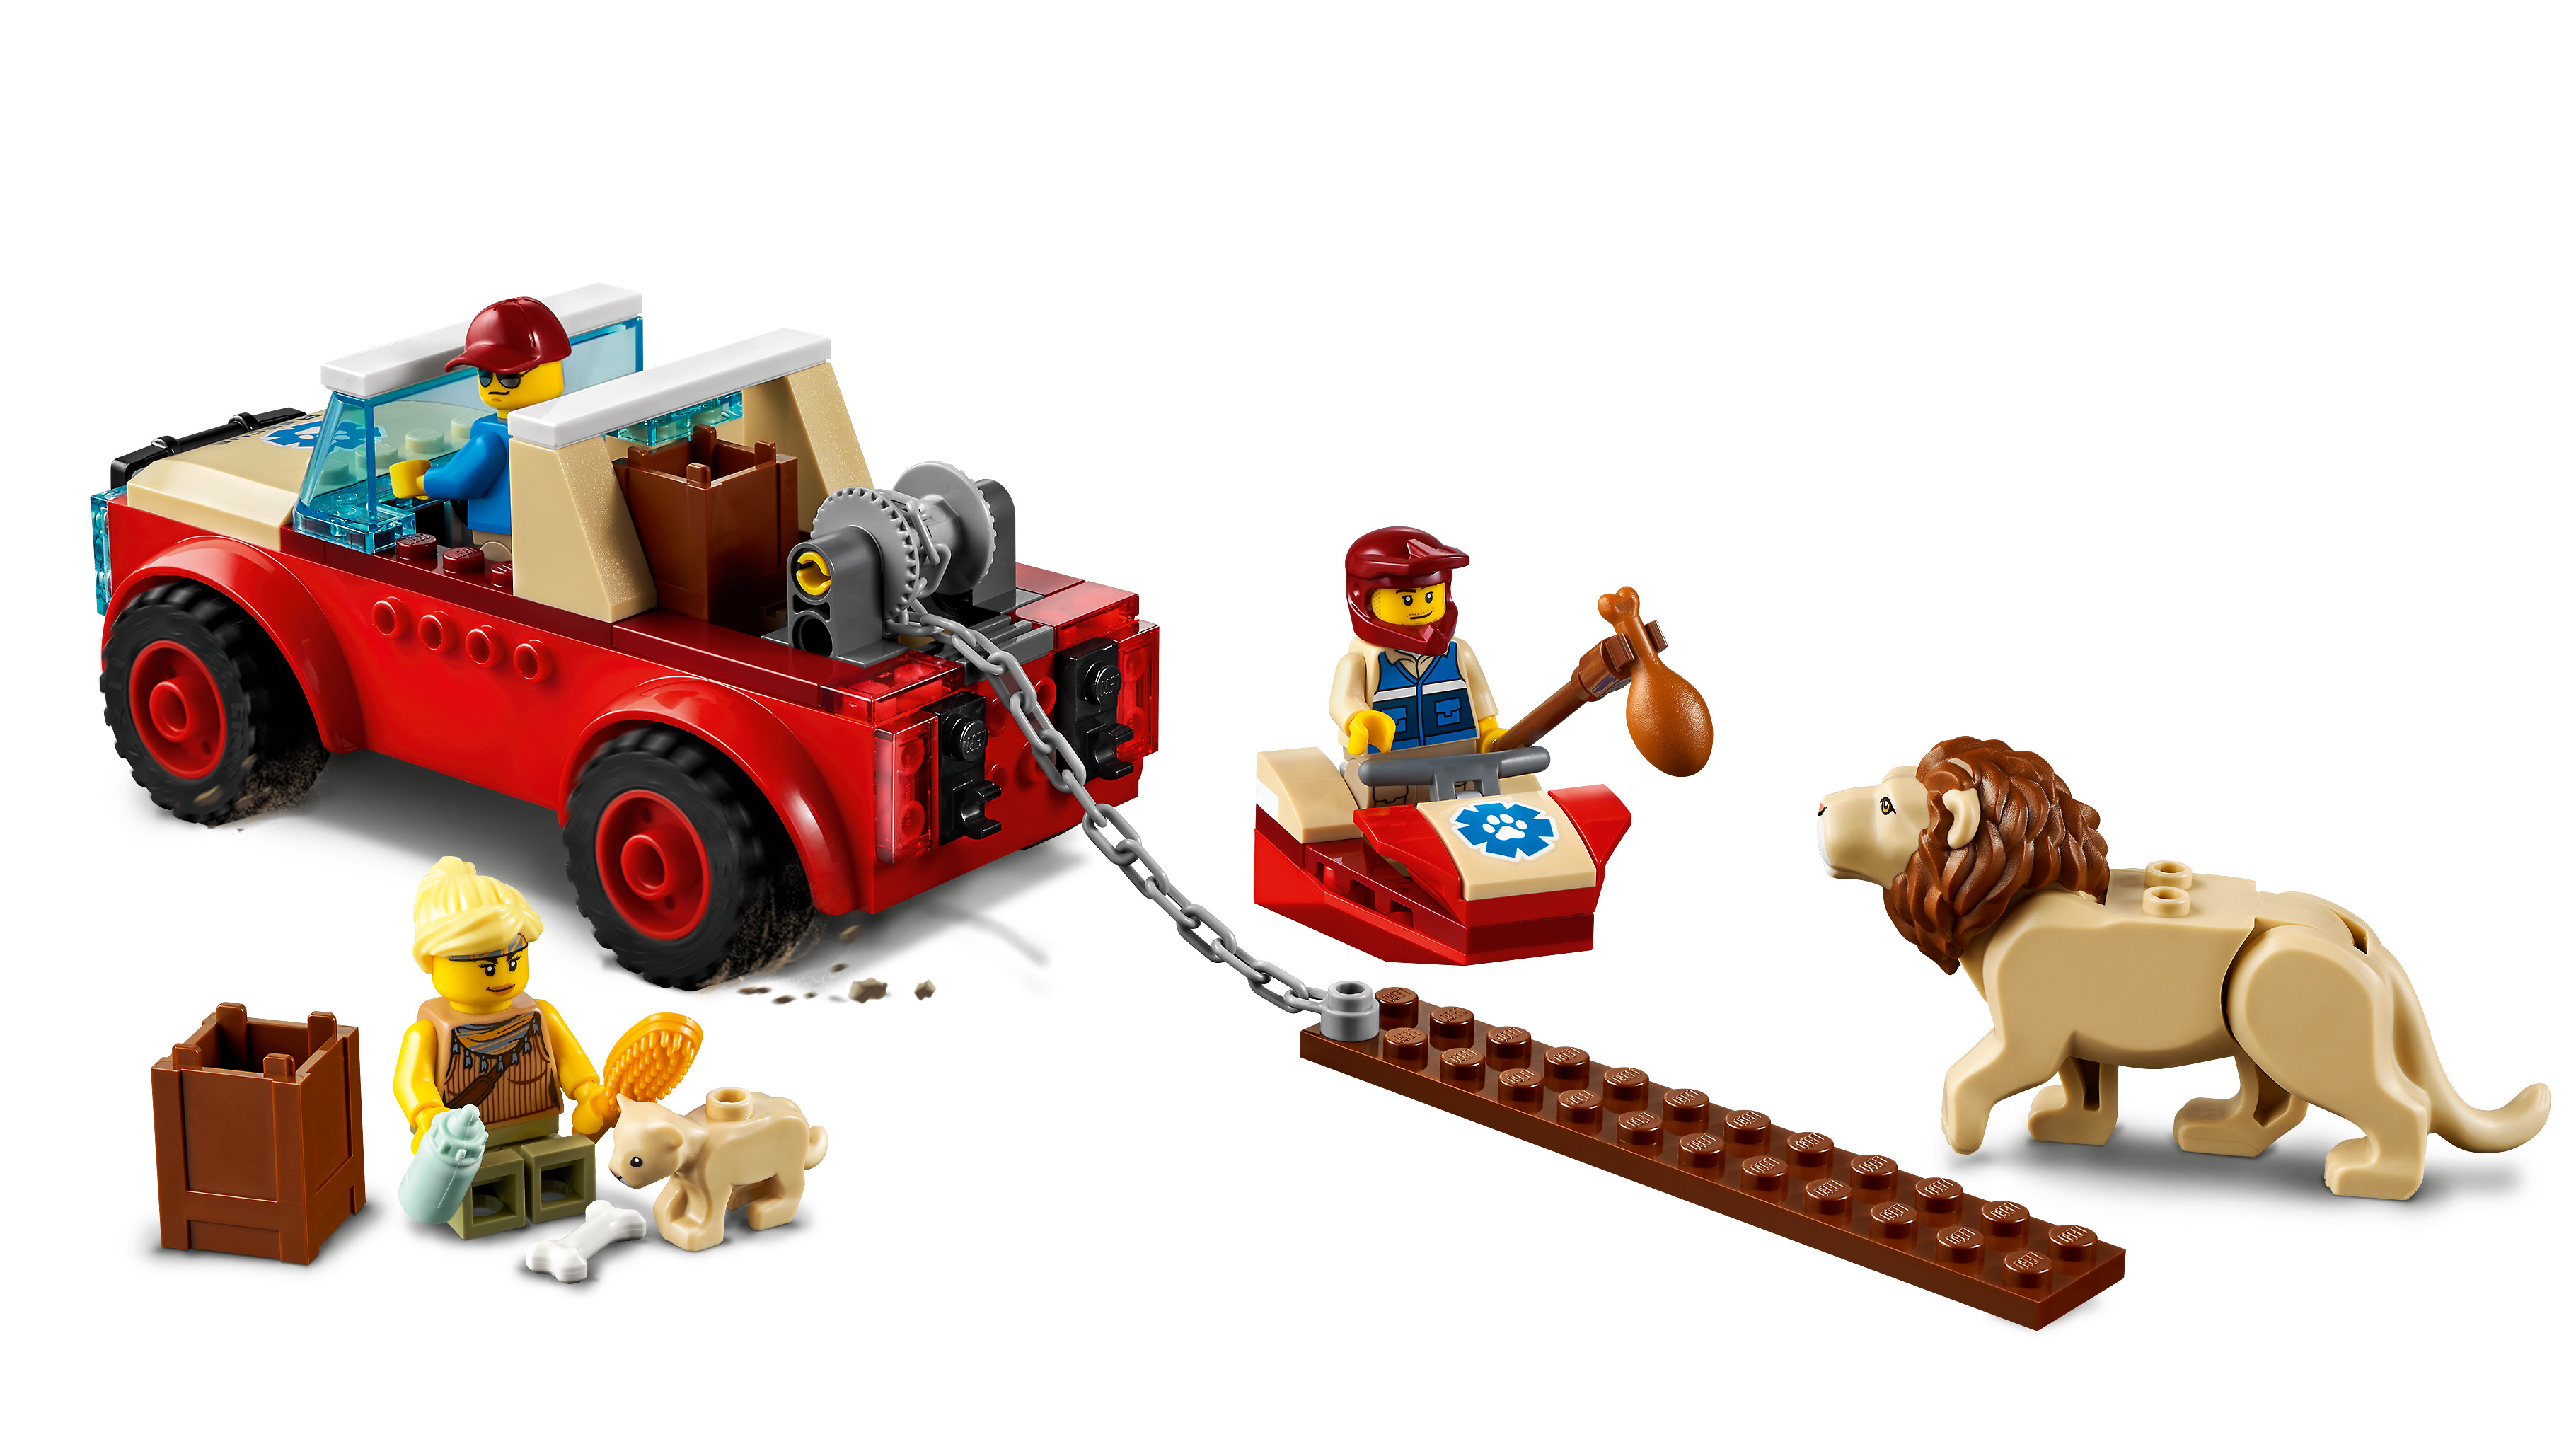 LEGO City 60301